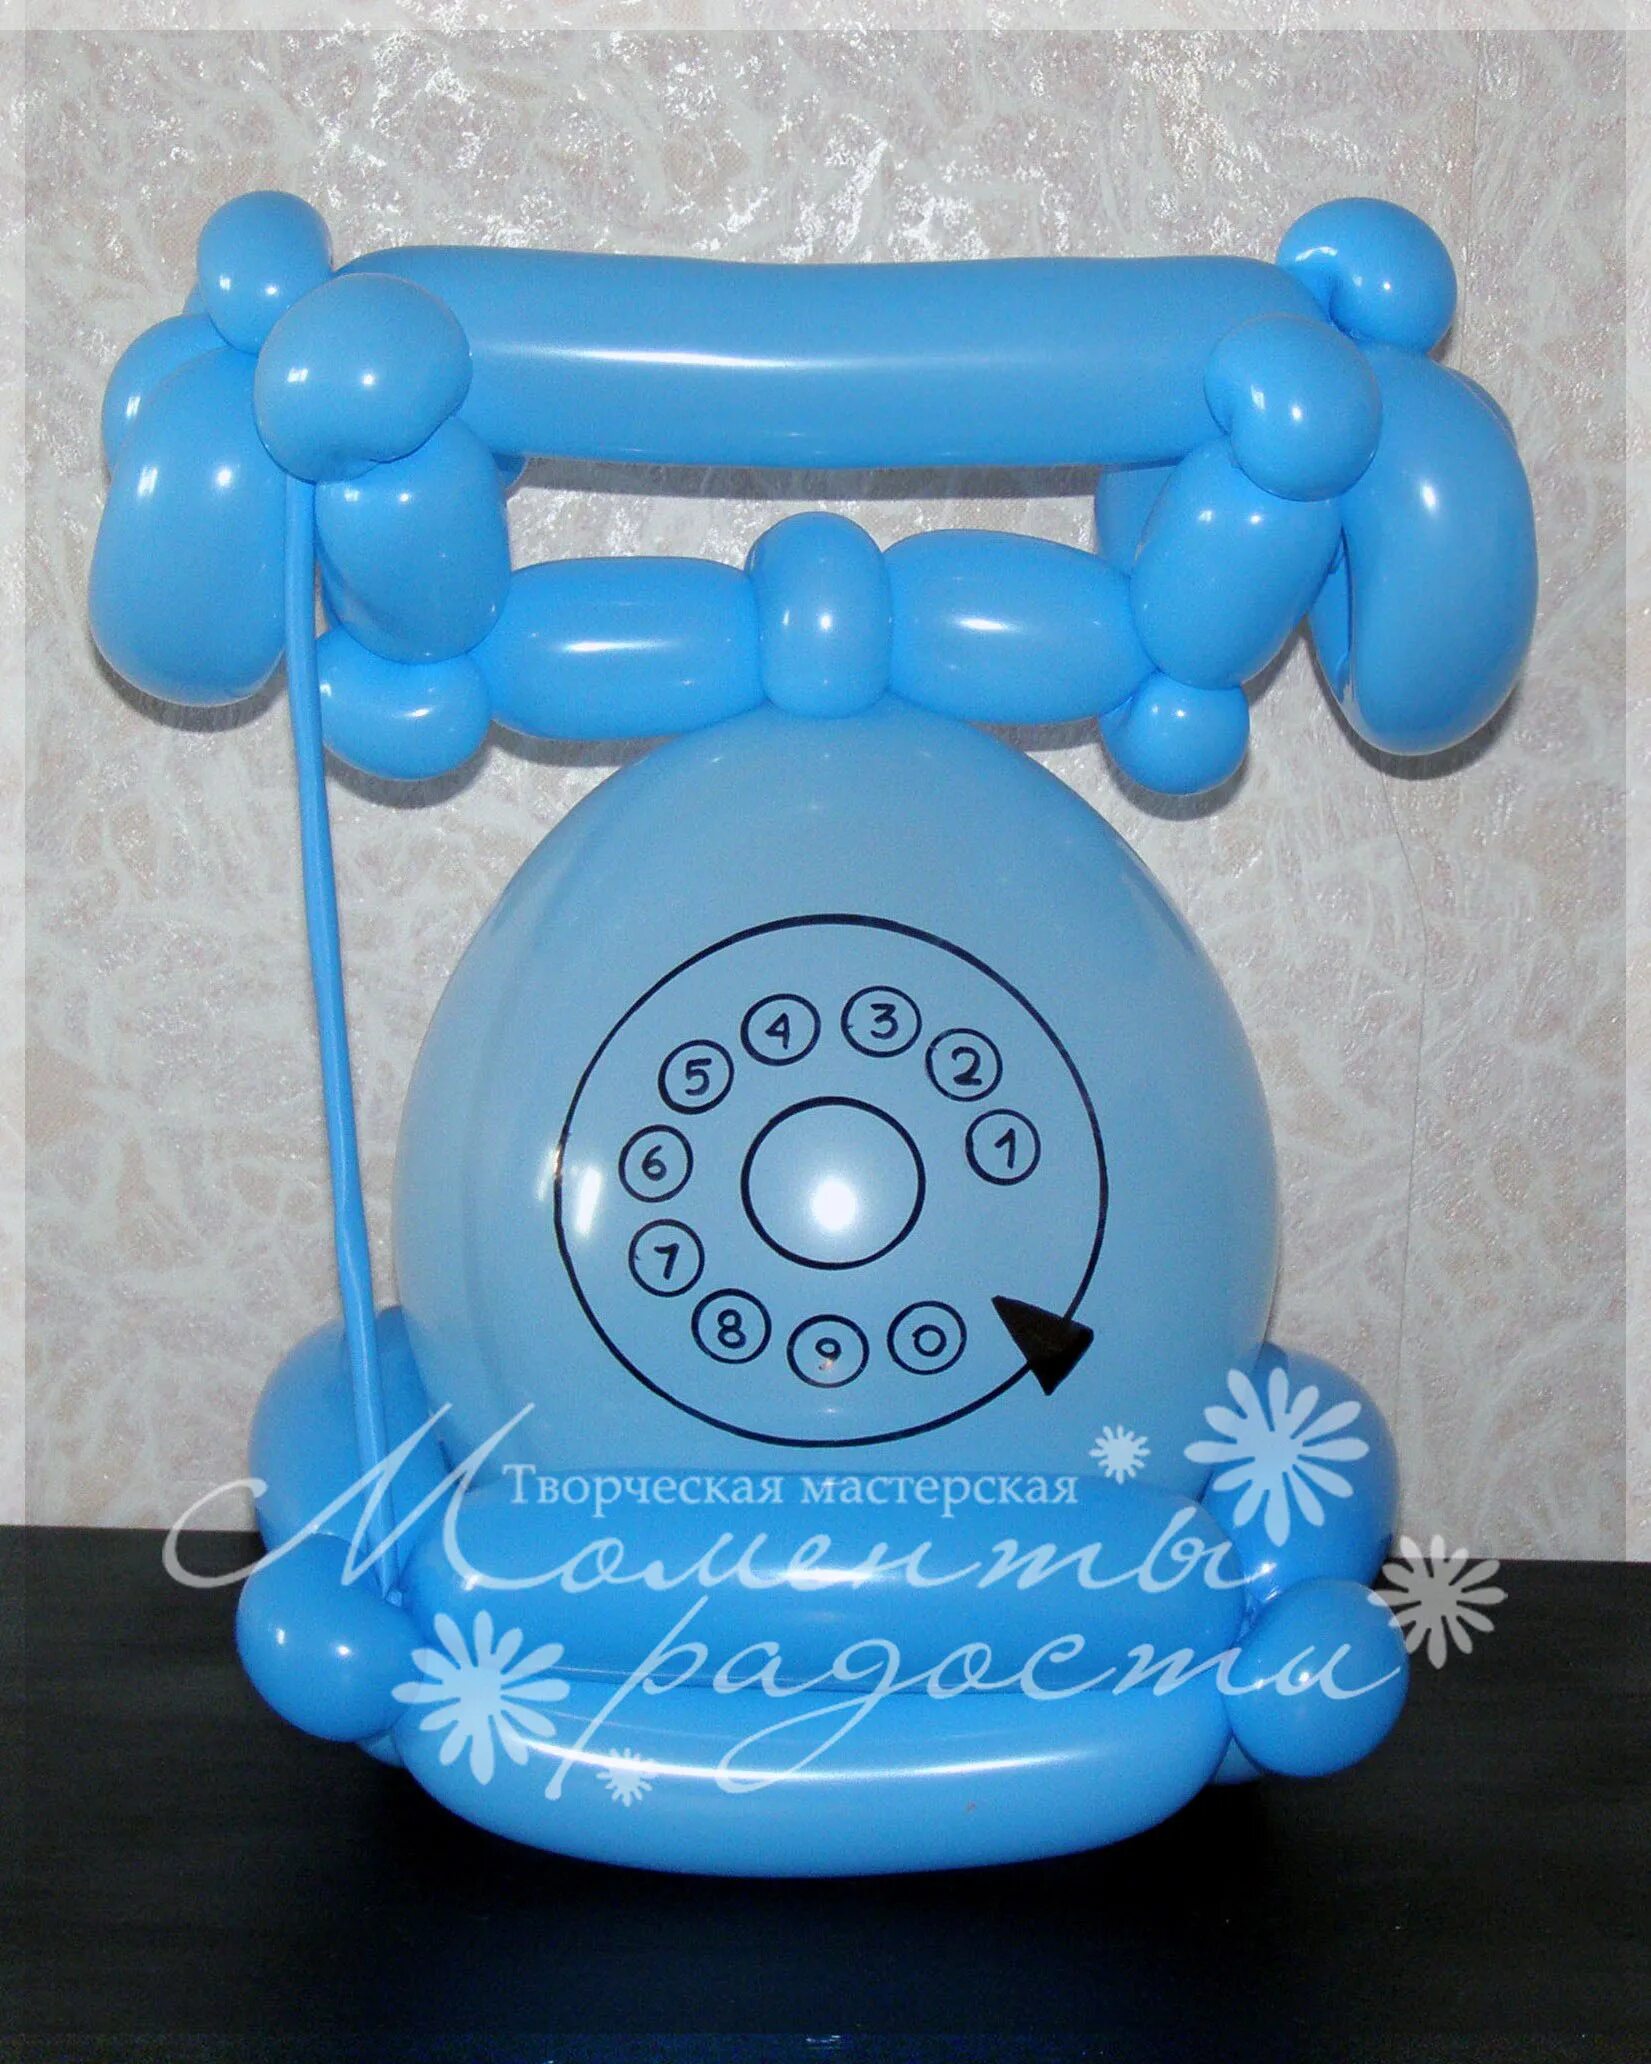 Номер телефона шар. Шарик в виде телефона. Надувная телефонная трубка. Надувной телефон. Телефонная трубка игрушка надувная.